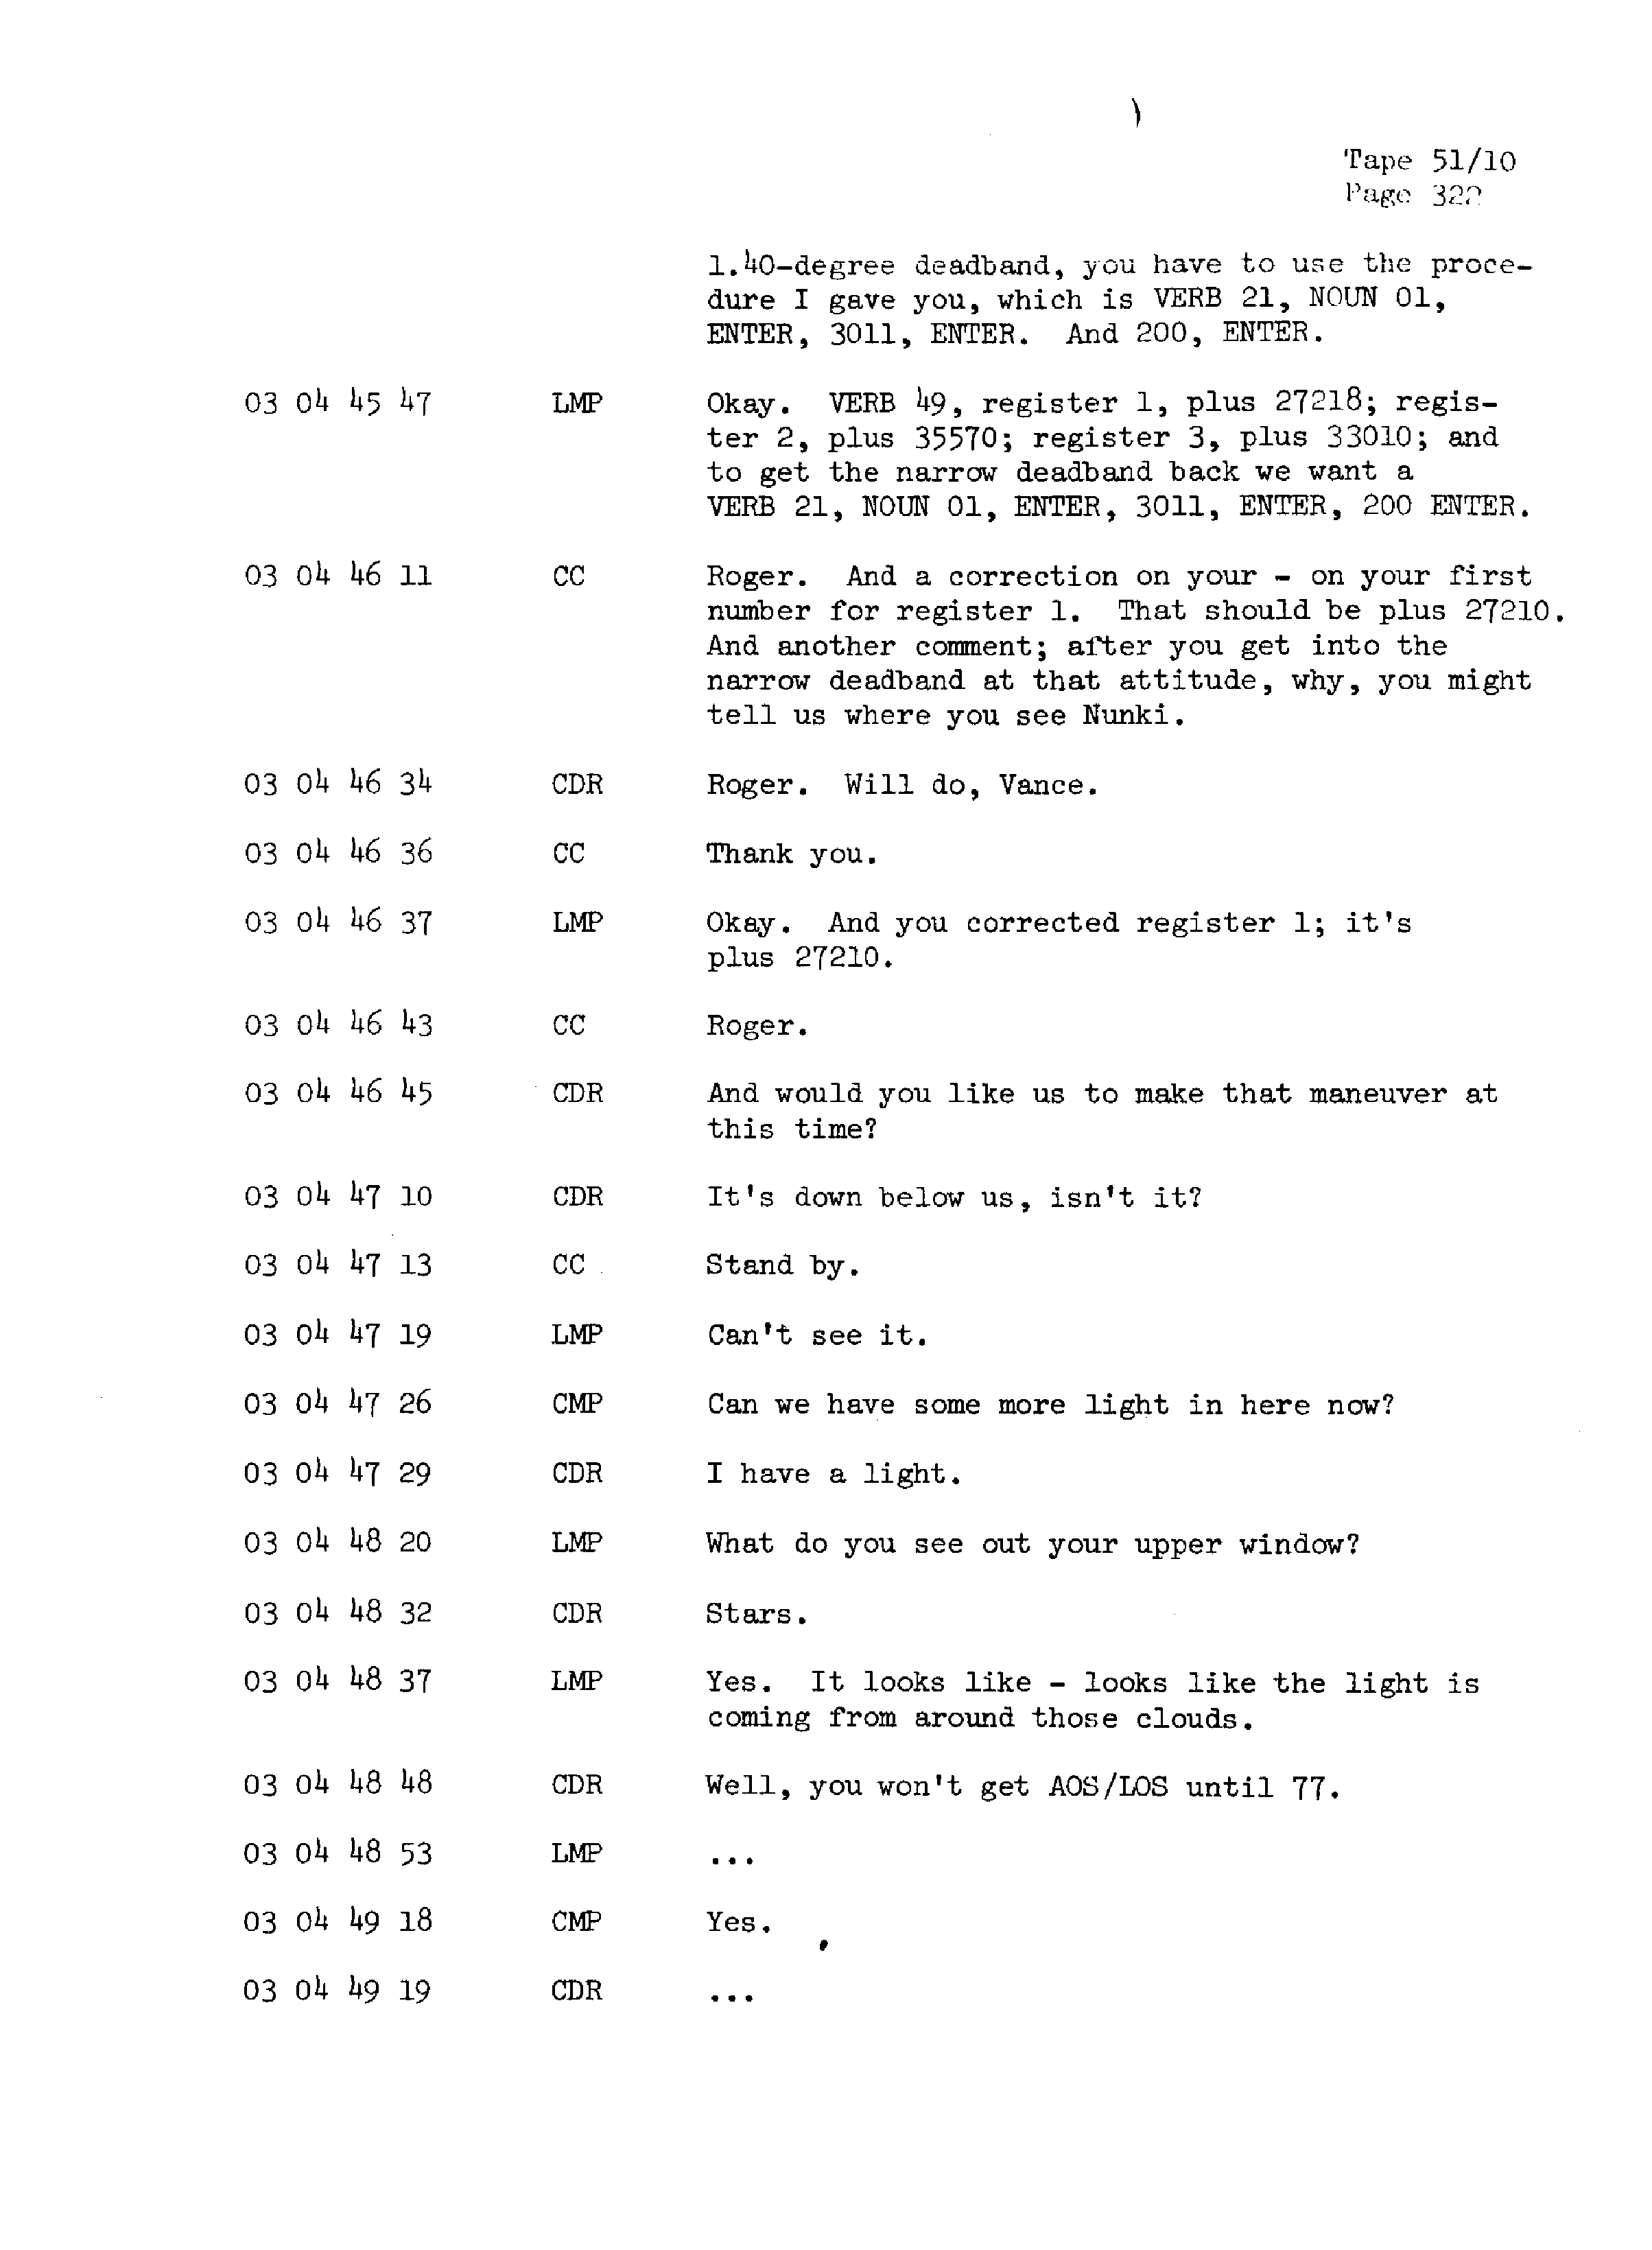 Page 329 of Apollo 13’s original transcript